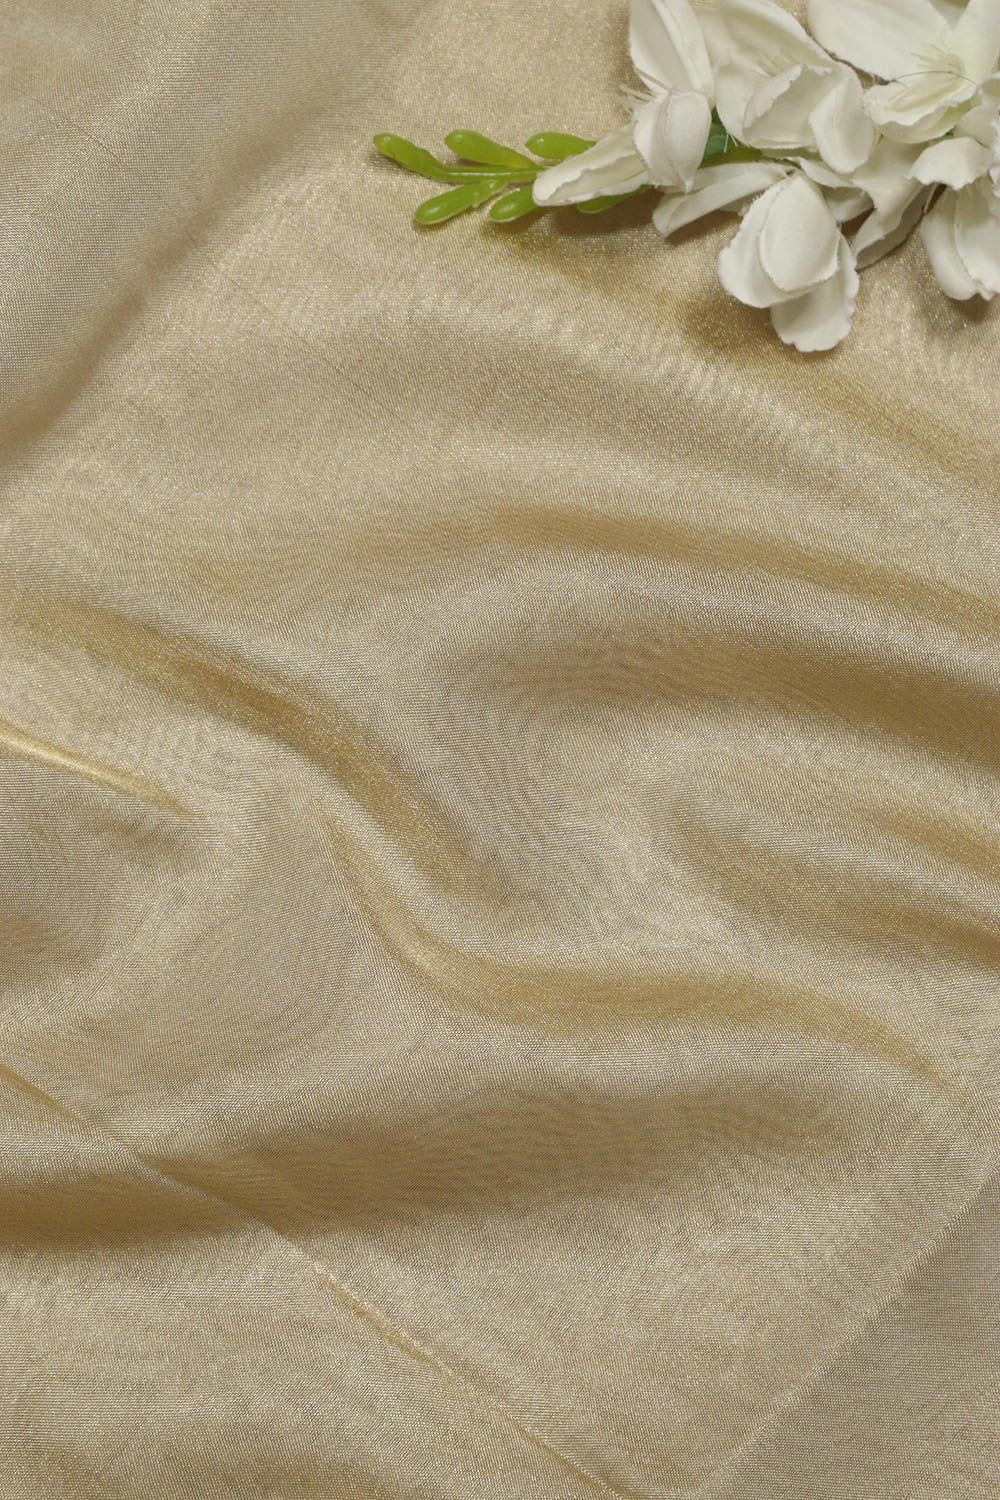 Opulent Golden Banarasi Tissue Katan Silk Fabric - Luxurion World